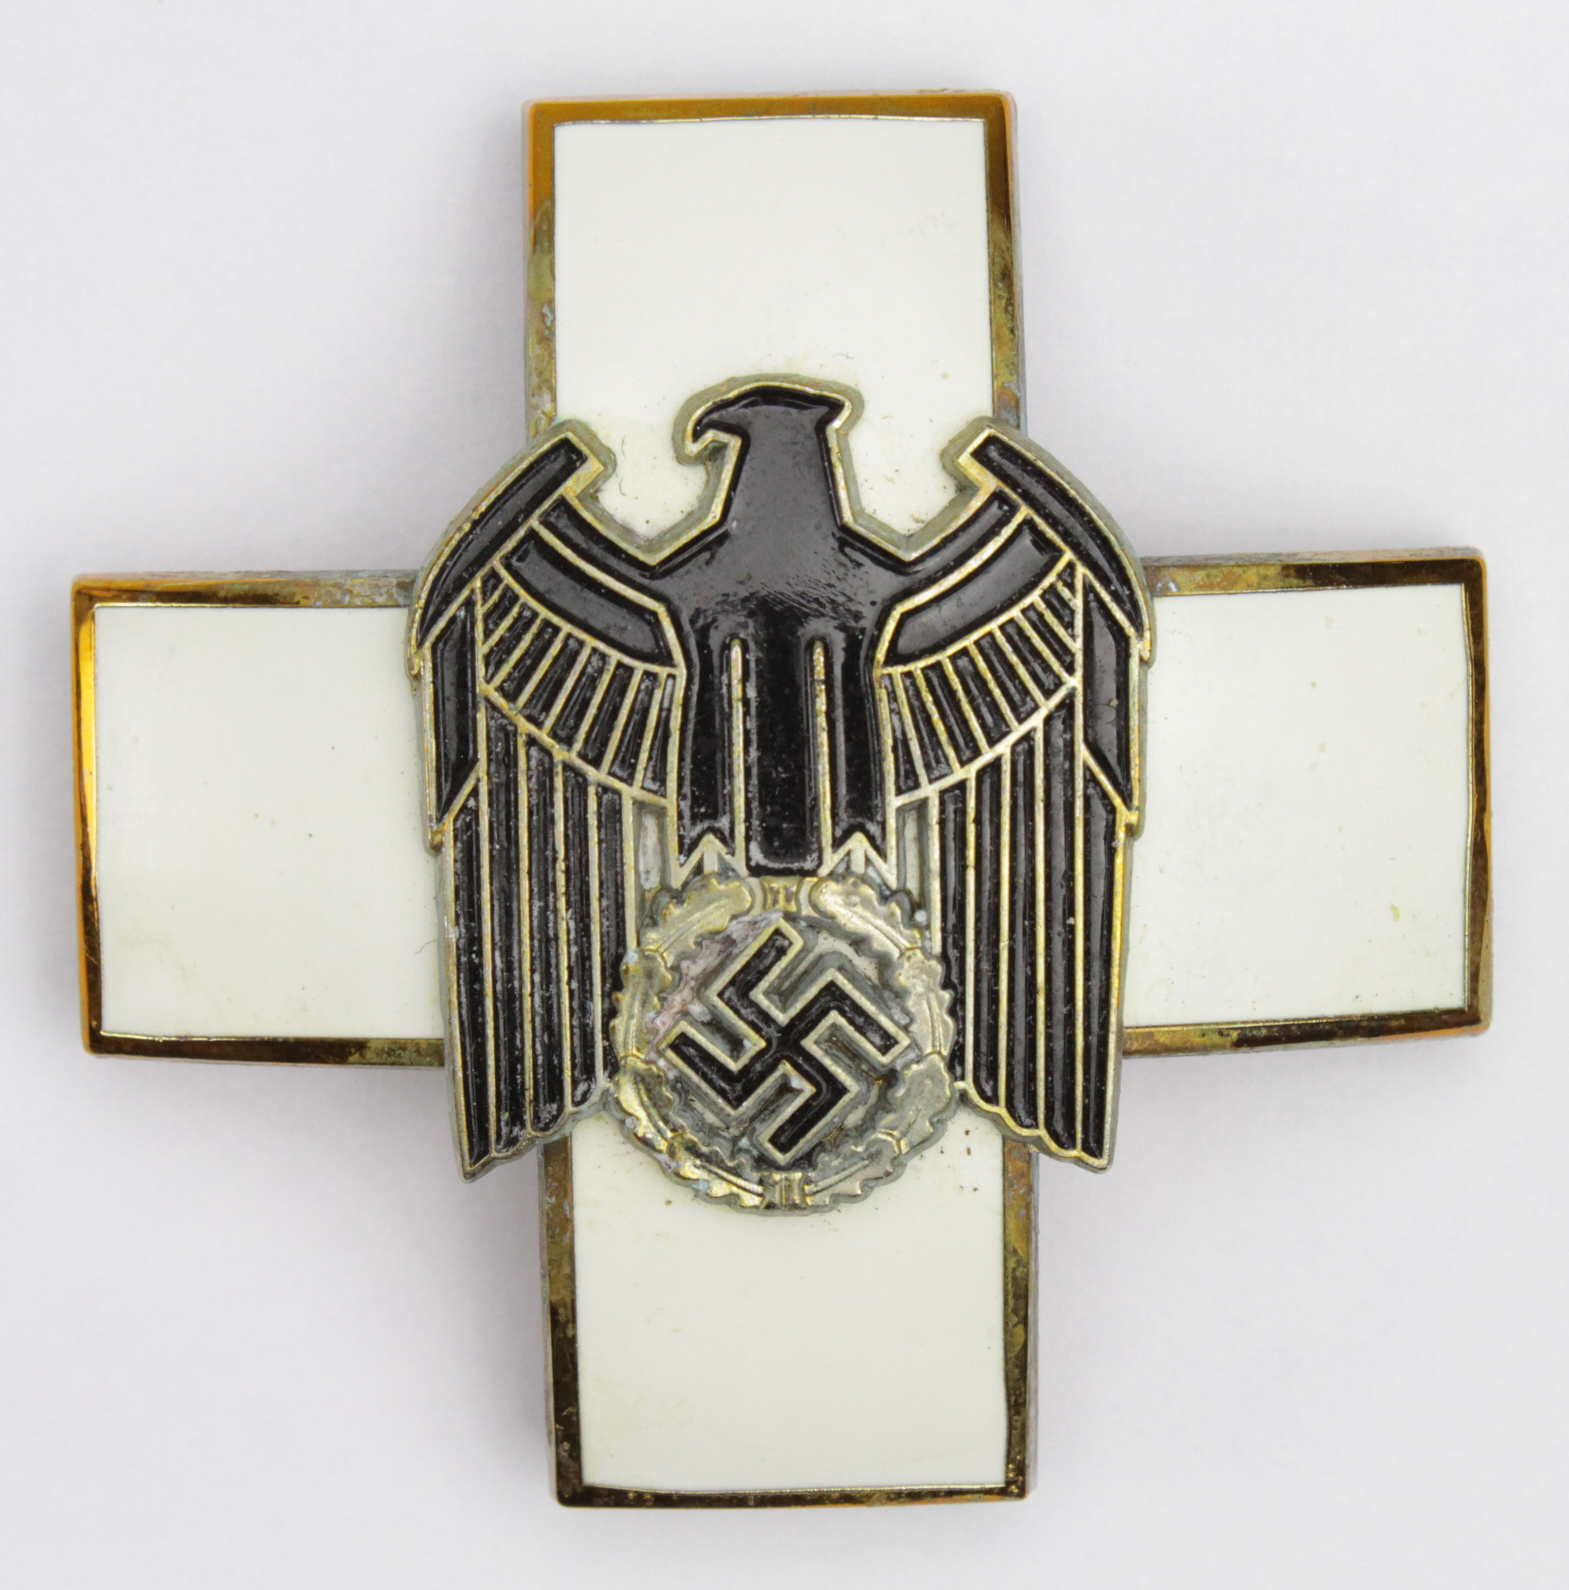 German Social Welfare Decoration 1939-45 (Ehrenzeichen fur Deutsche Volkspflege) 2nd Class Breast